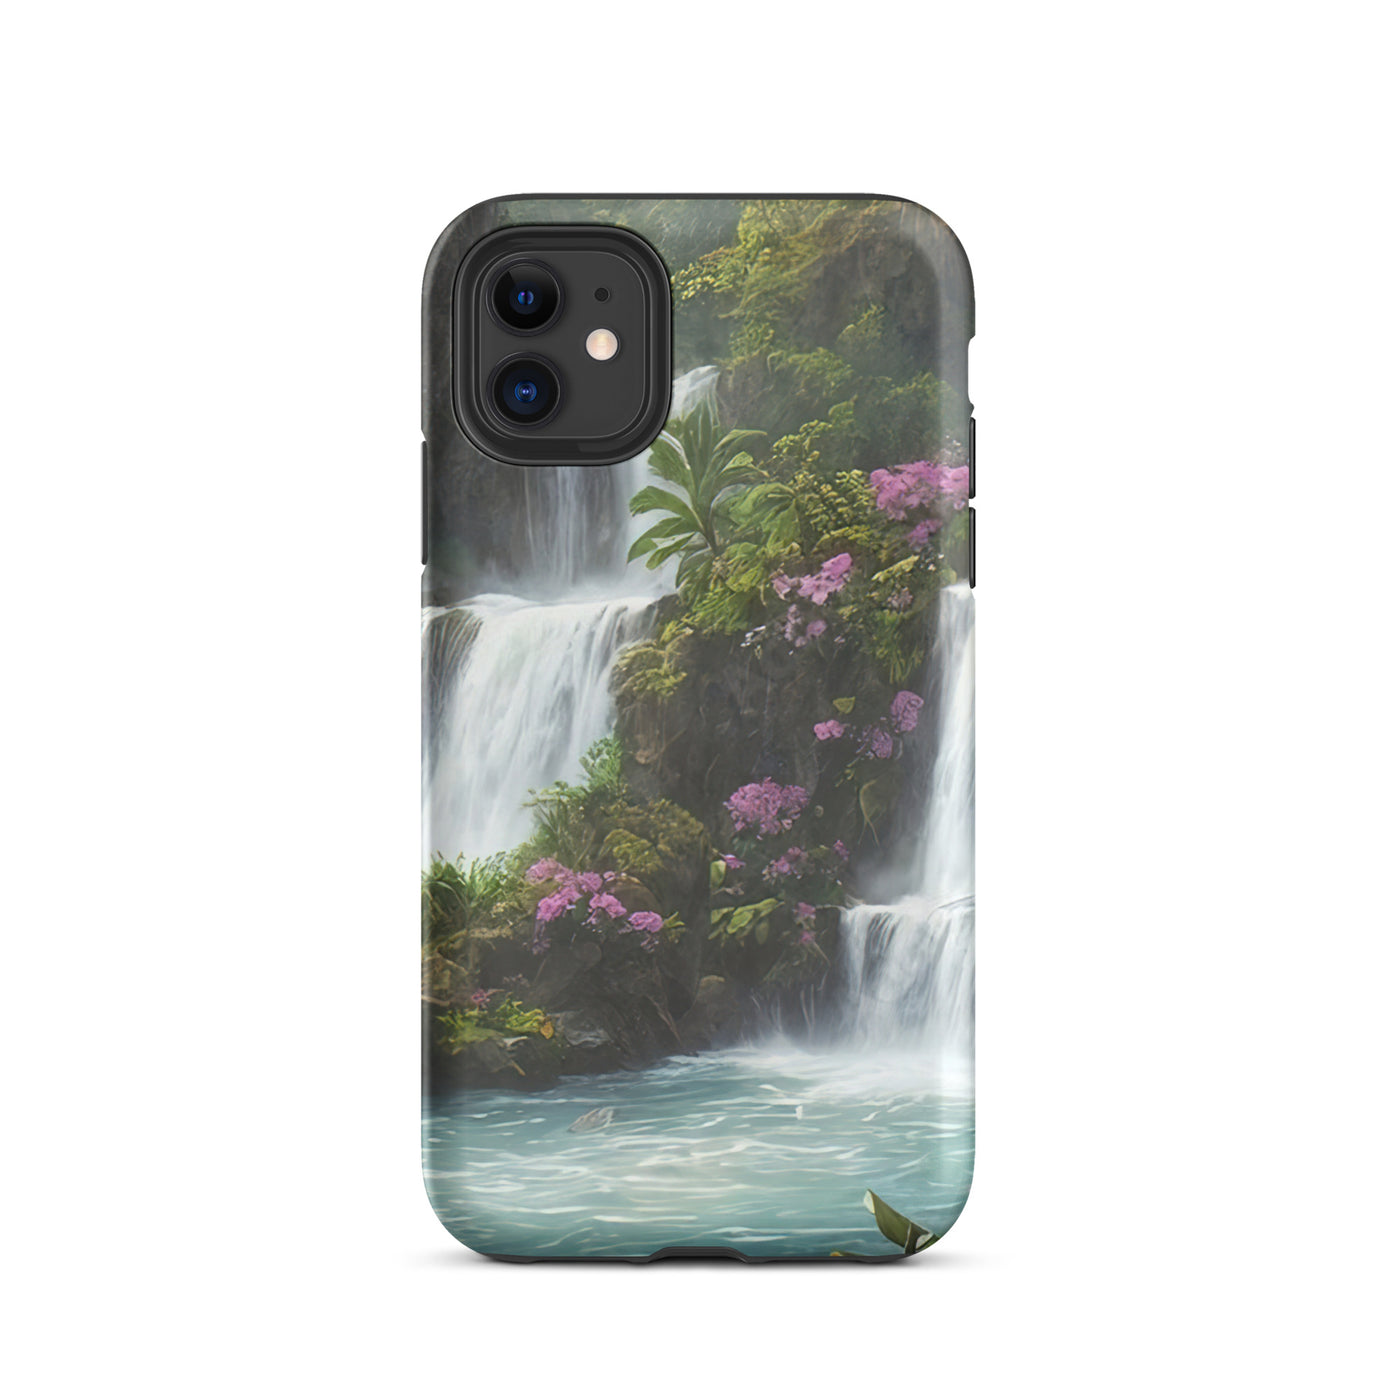 Wasserfall im Wald und Blumen - Schöne Malerei - iPhone Schutzhülle (robust) camping xxx iPhone 11